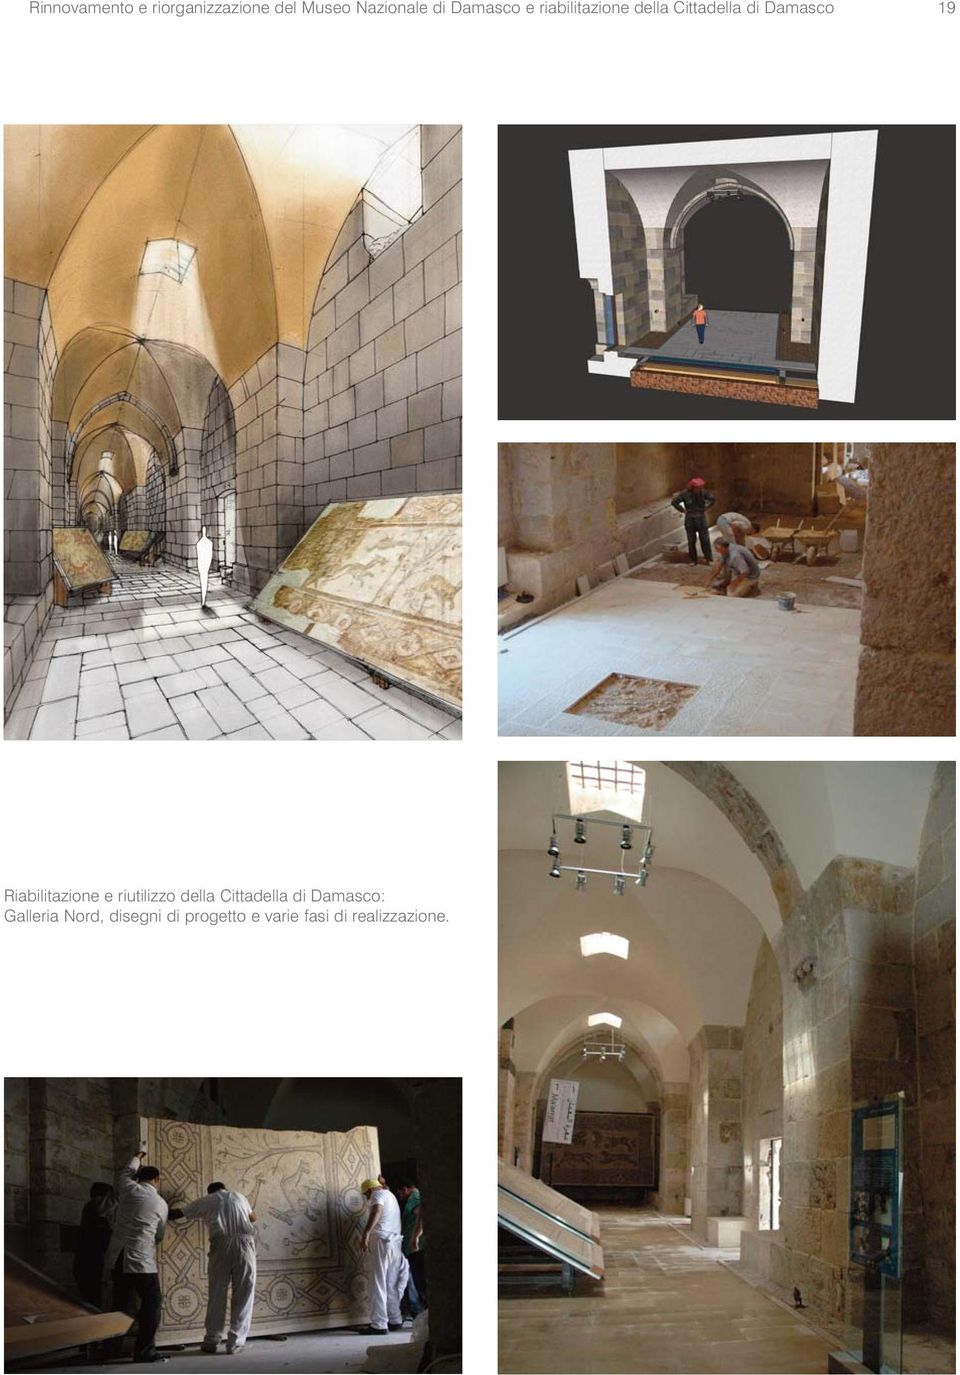 Riabilitazione e riutilizzo della Cittadella di Damasco: